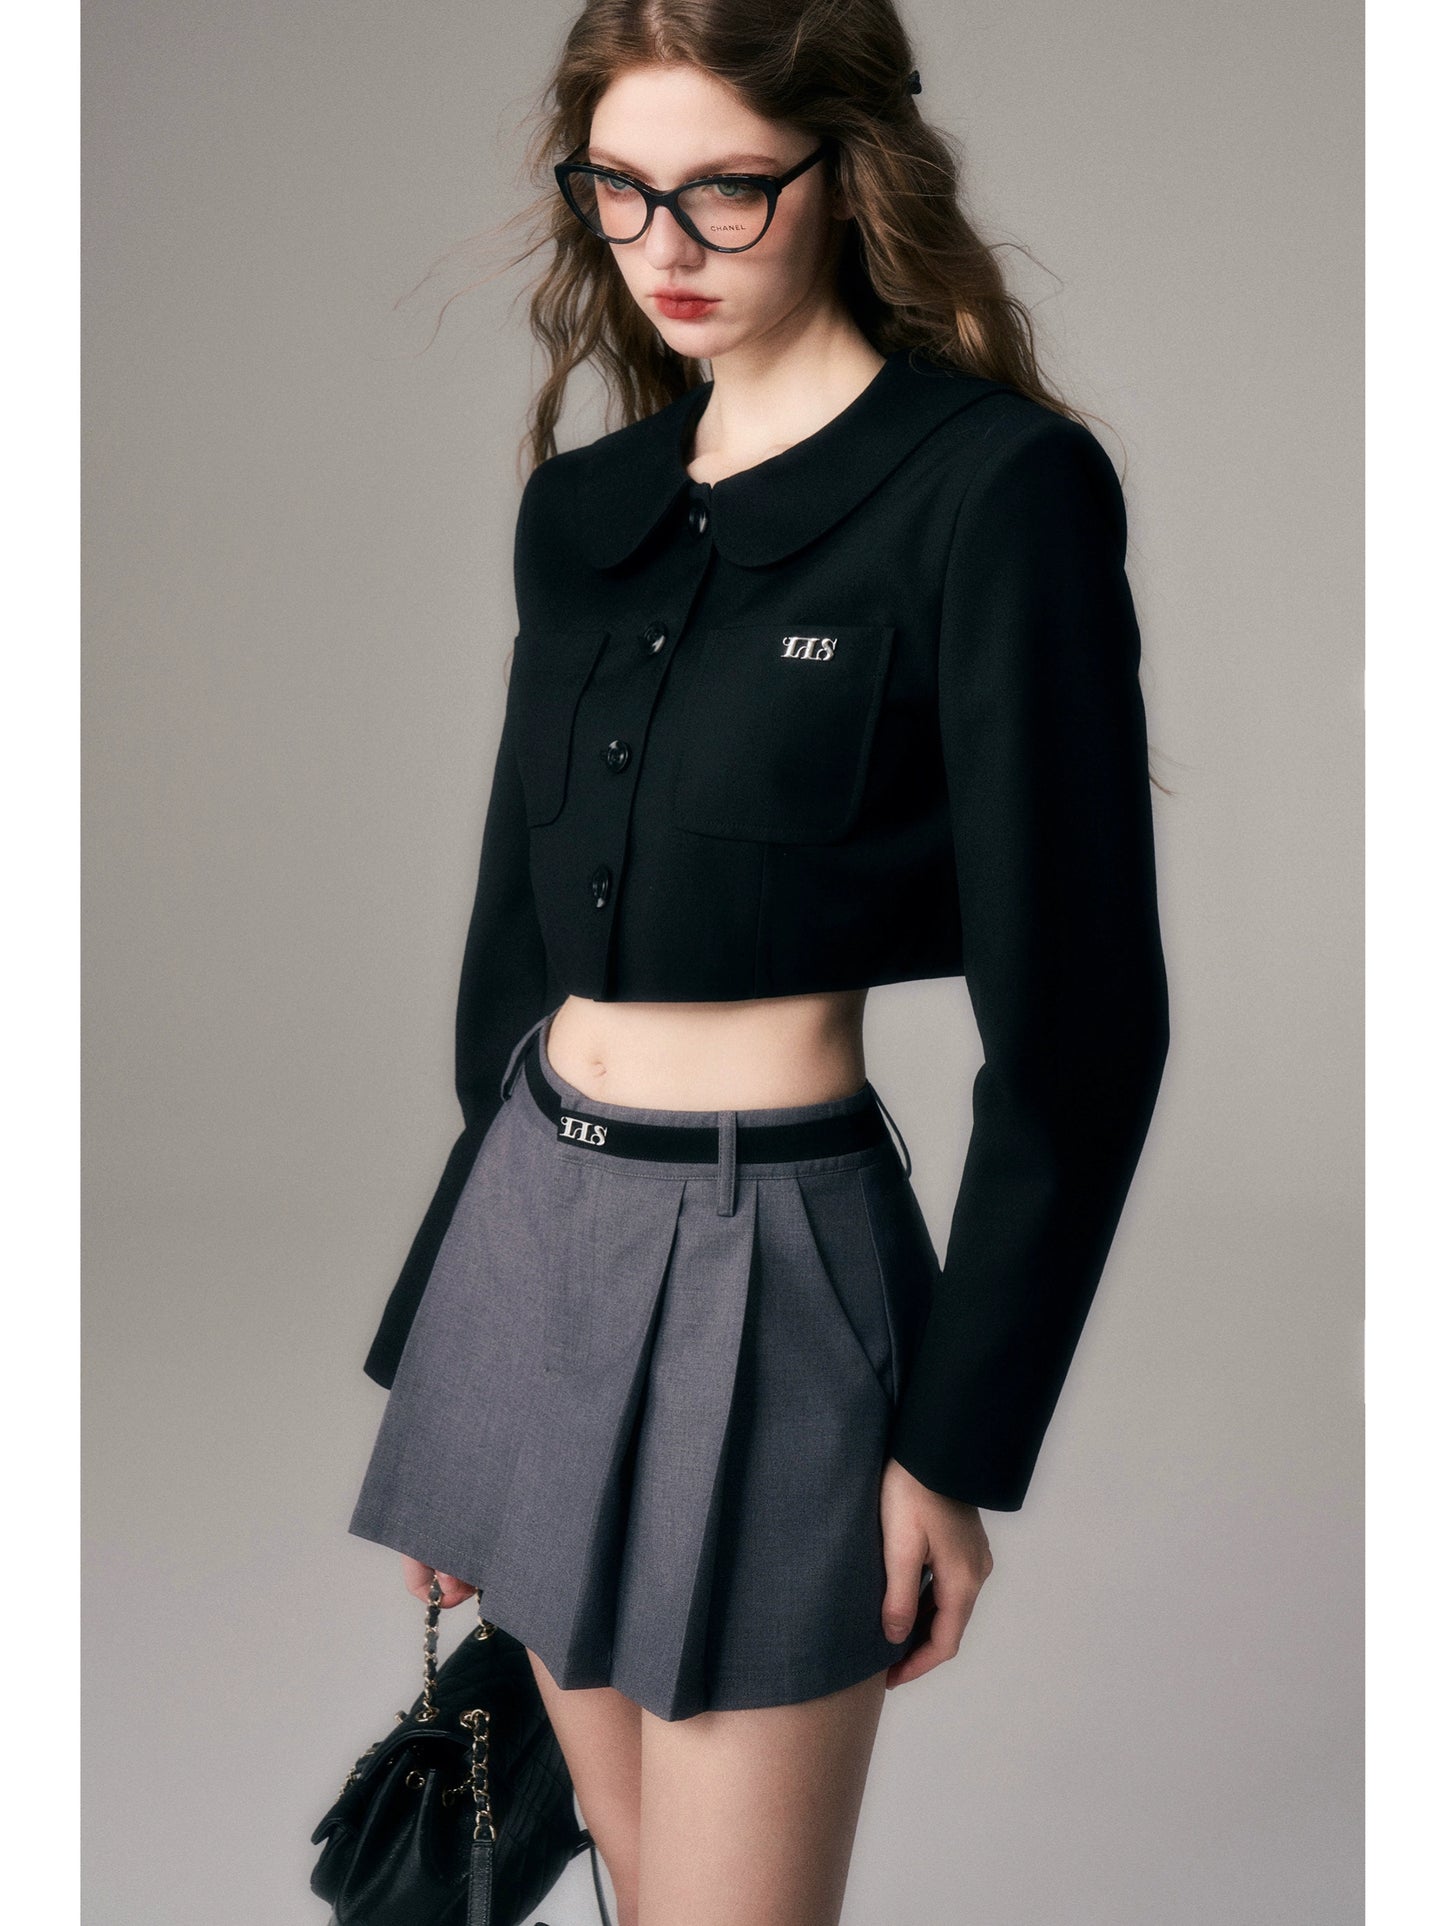 Grey Academy Style Pleated Mini Skirt